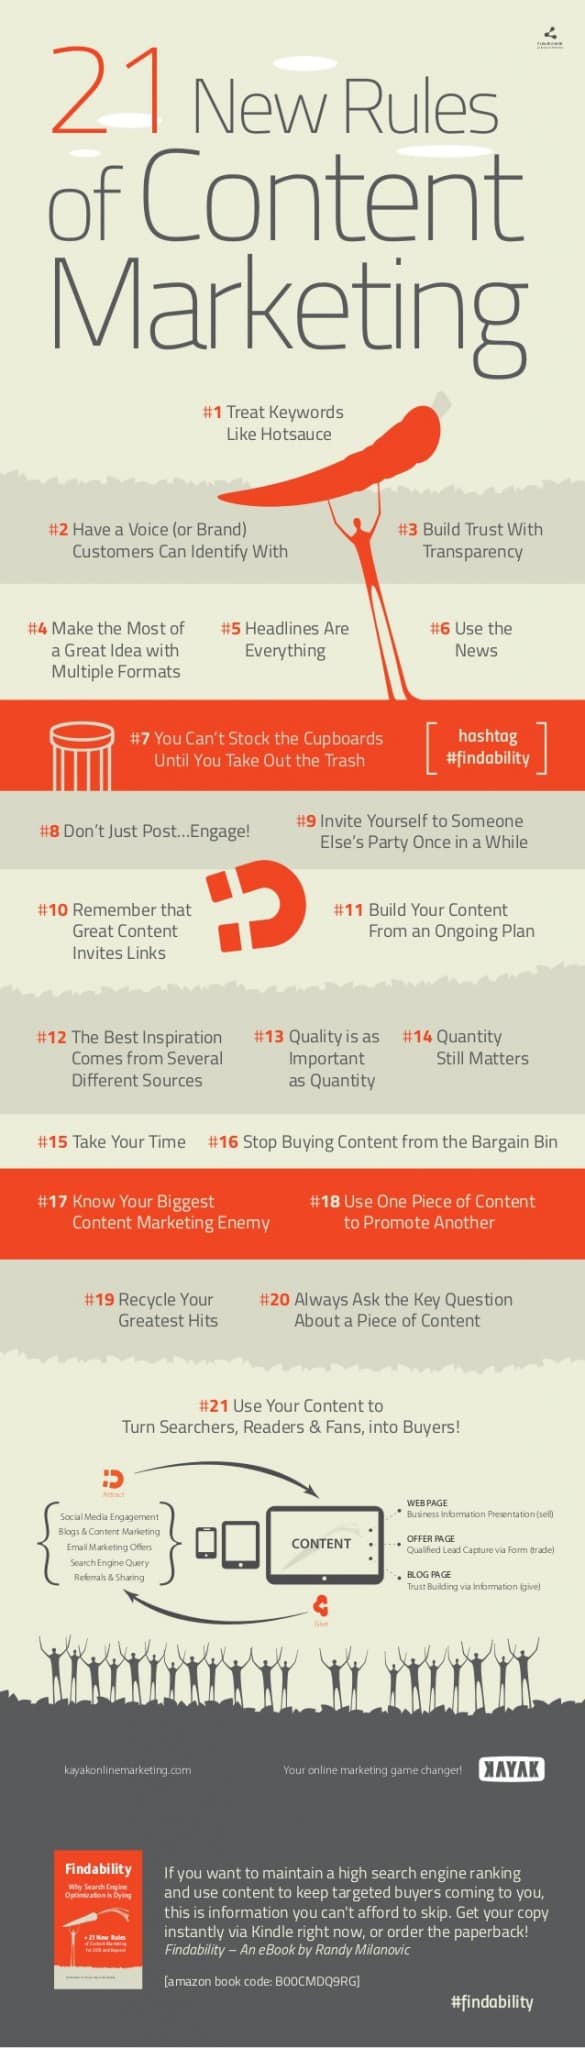 De 21 content marketing regels